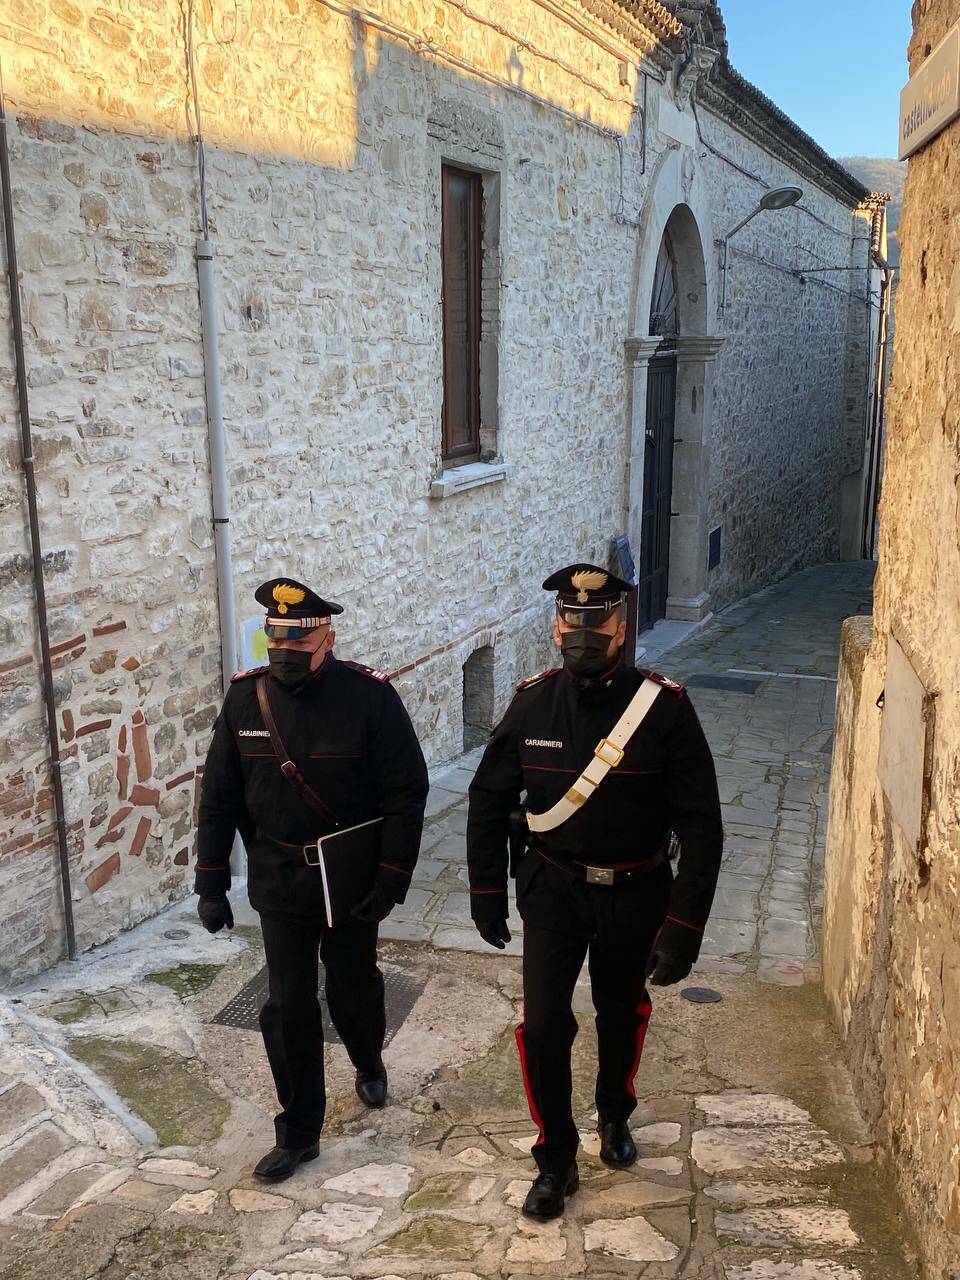 Tenta suicidio bevendo candeggina, salvato dai carabinieri nel Materano